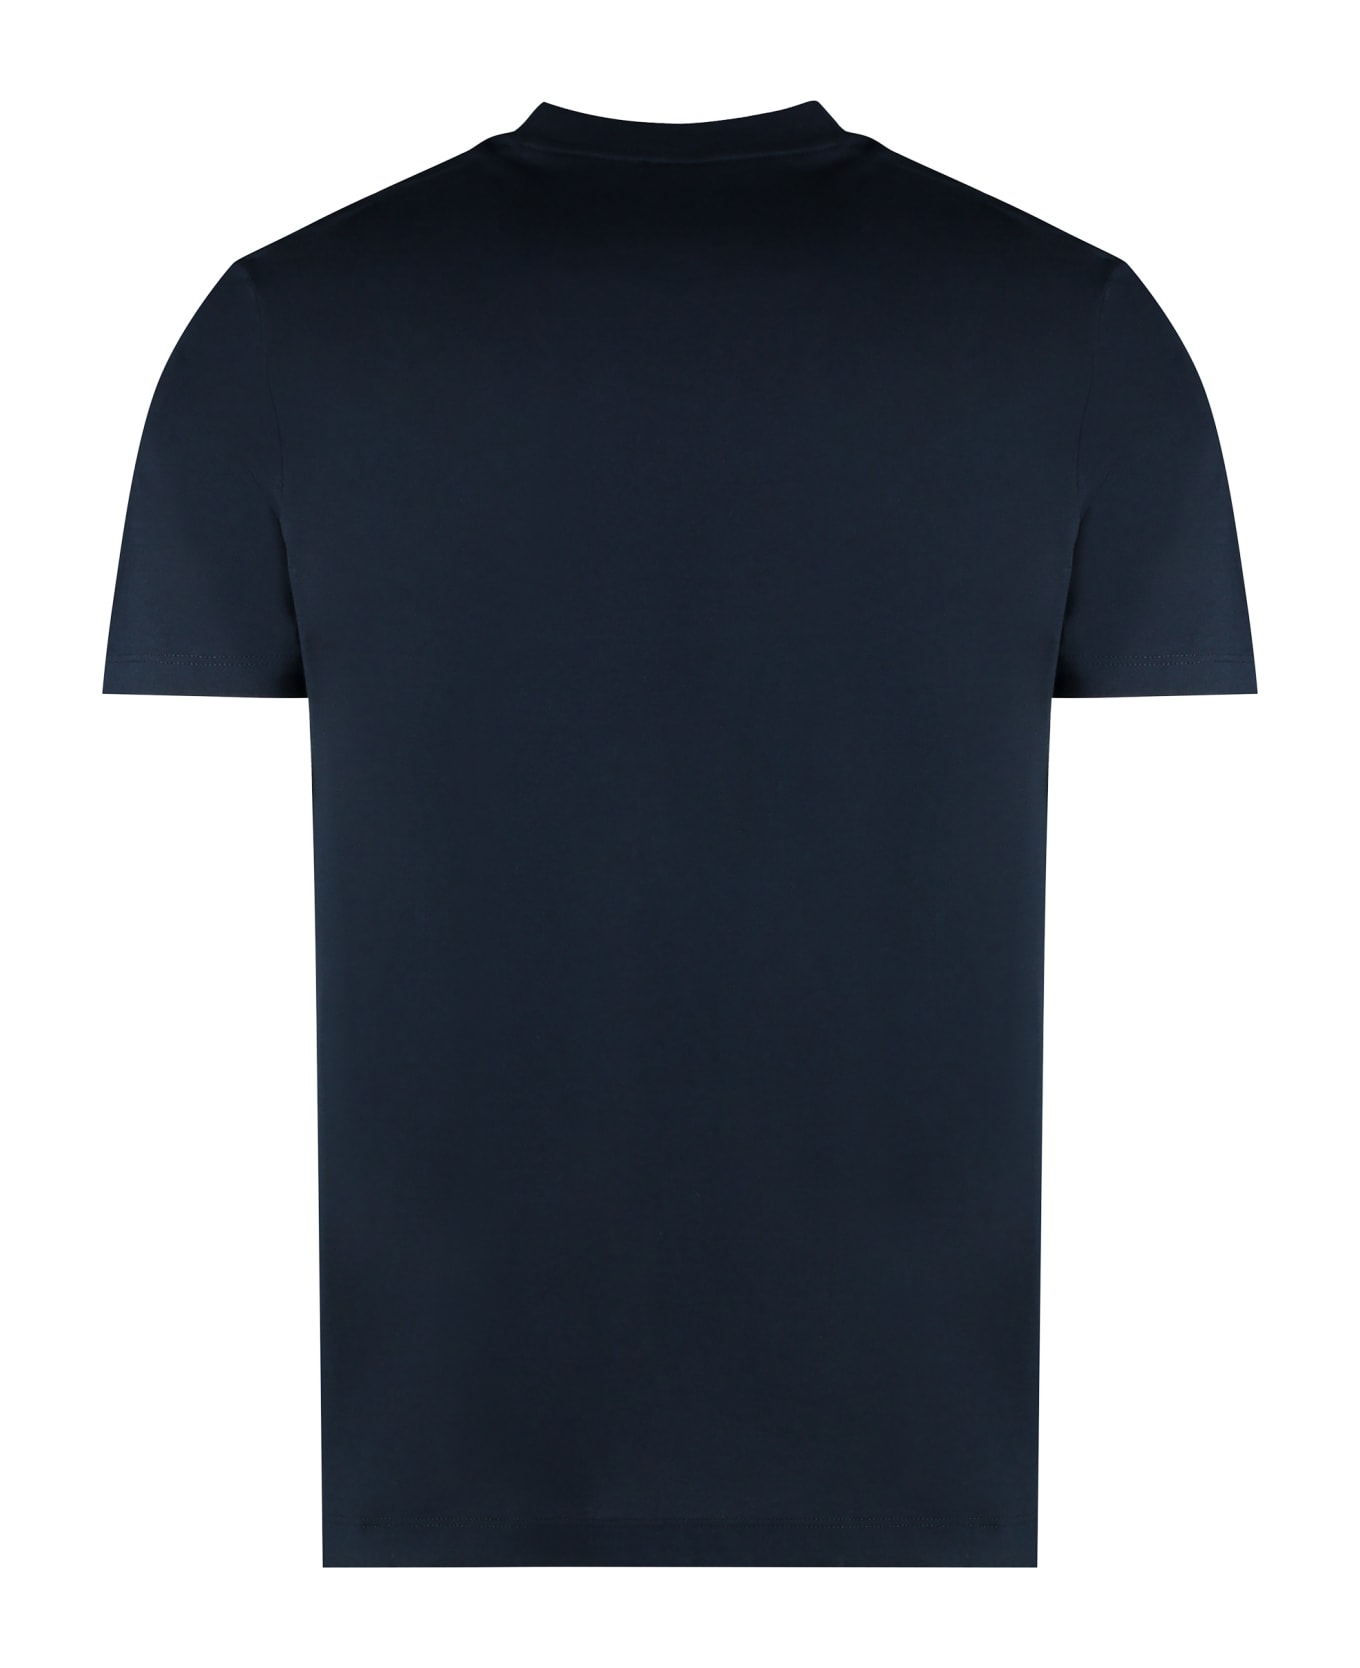 Paul&Shark Logo Cotton T-shirt - blue